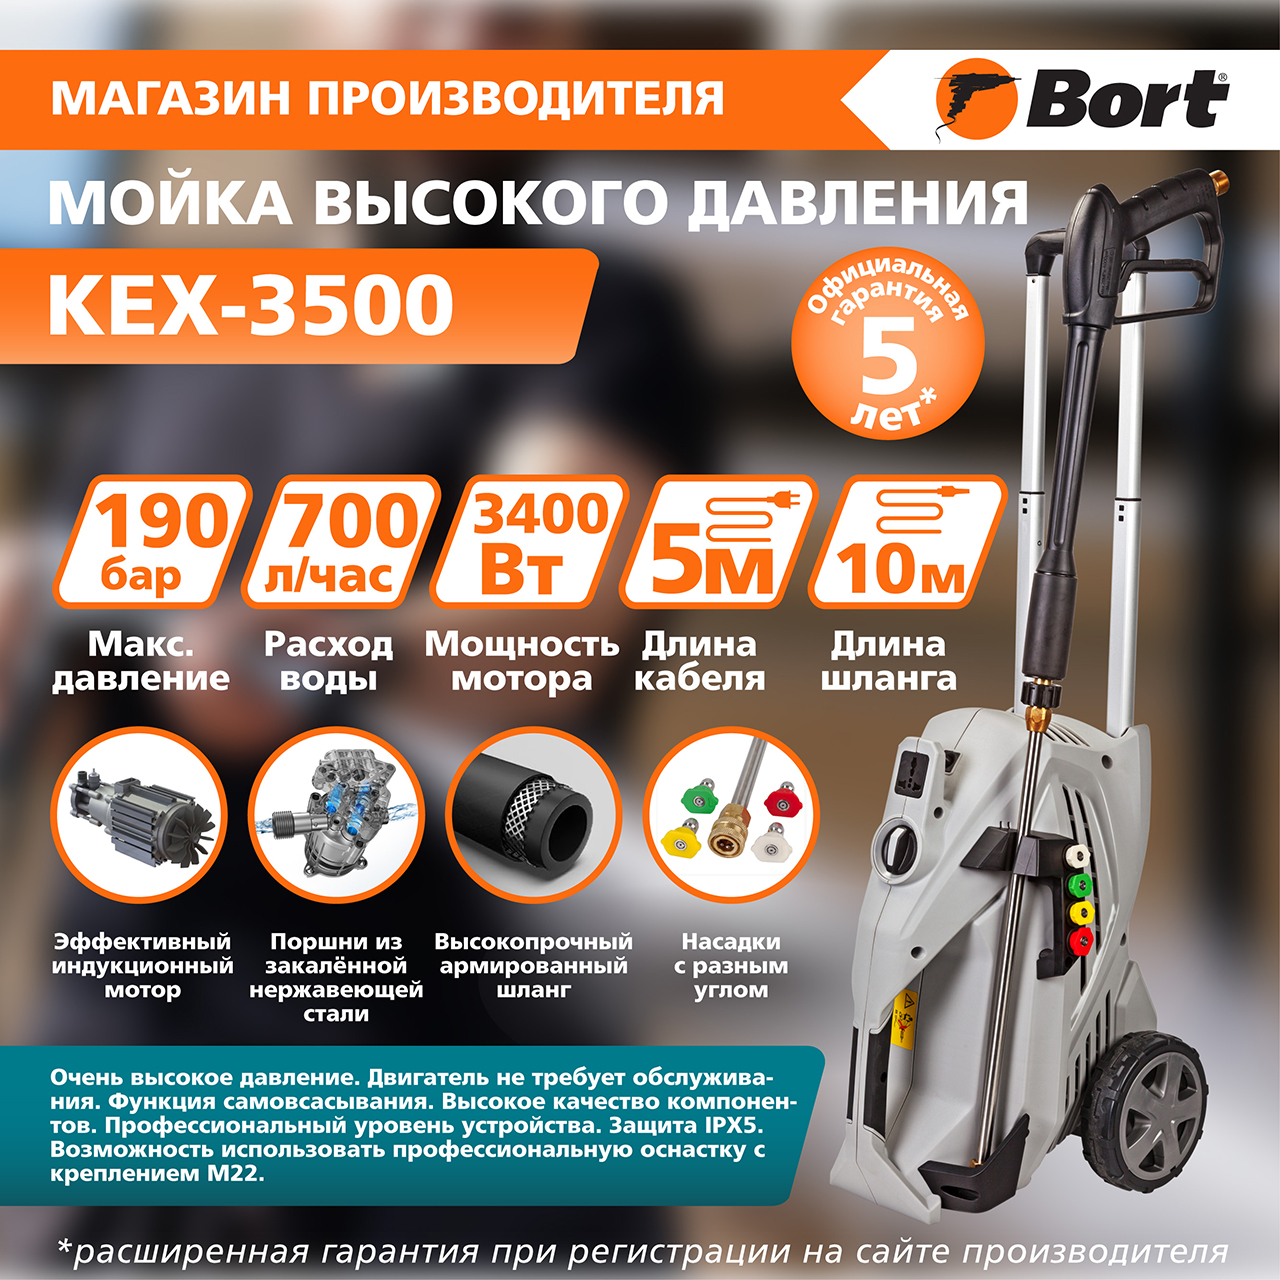 Электрическая мойка высокого давления Bort KEX-3500 91278166 3400 Вт